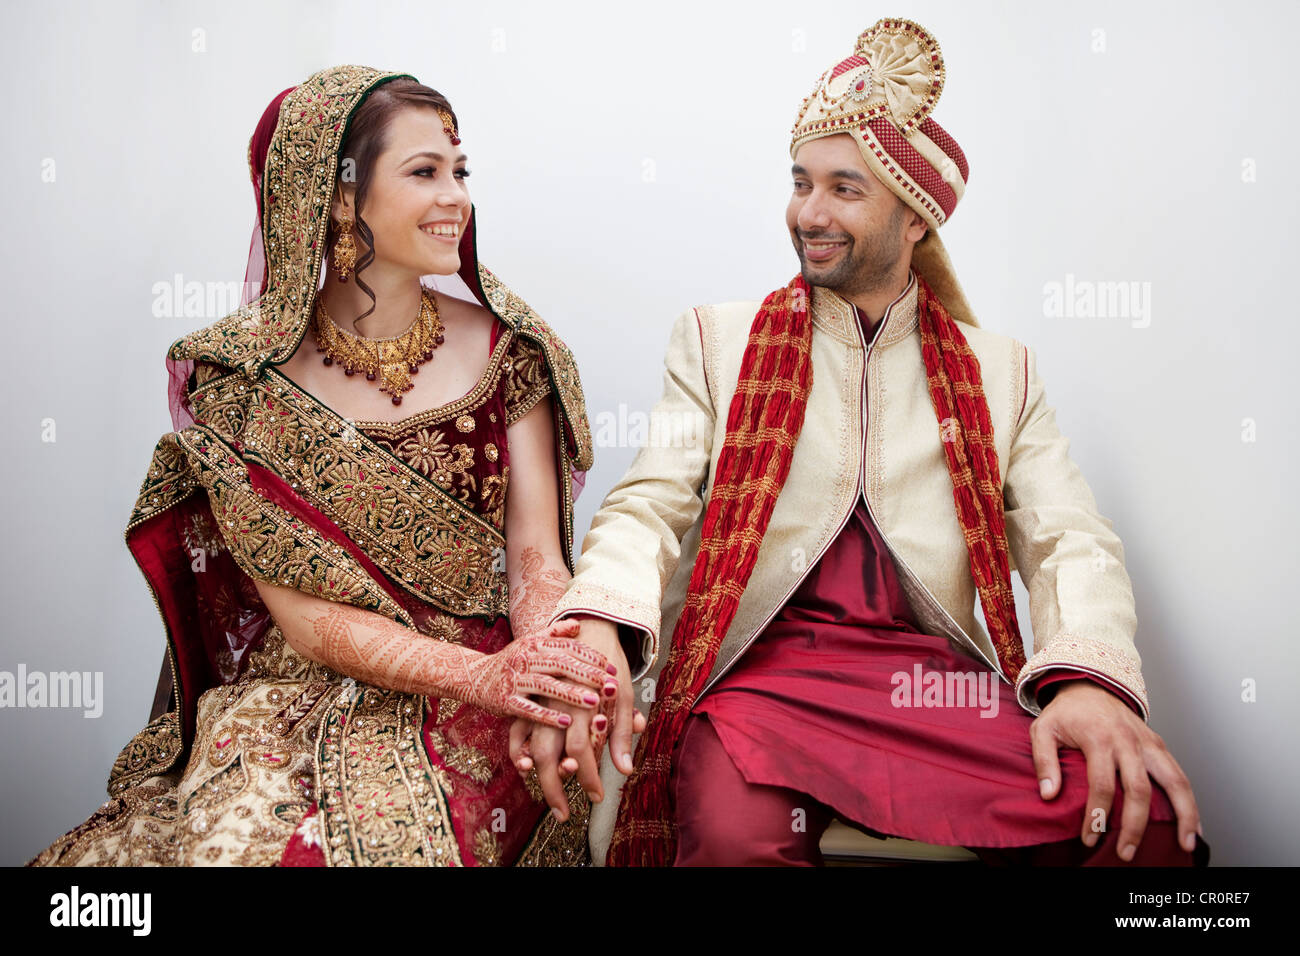 Braut und Bräutigam in traditionelle indische Hochzeit Kleidung  Stockfotografie - Alamy